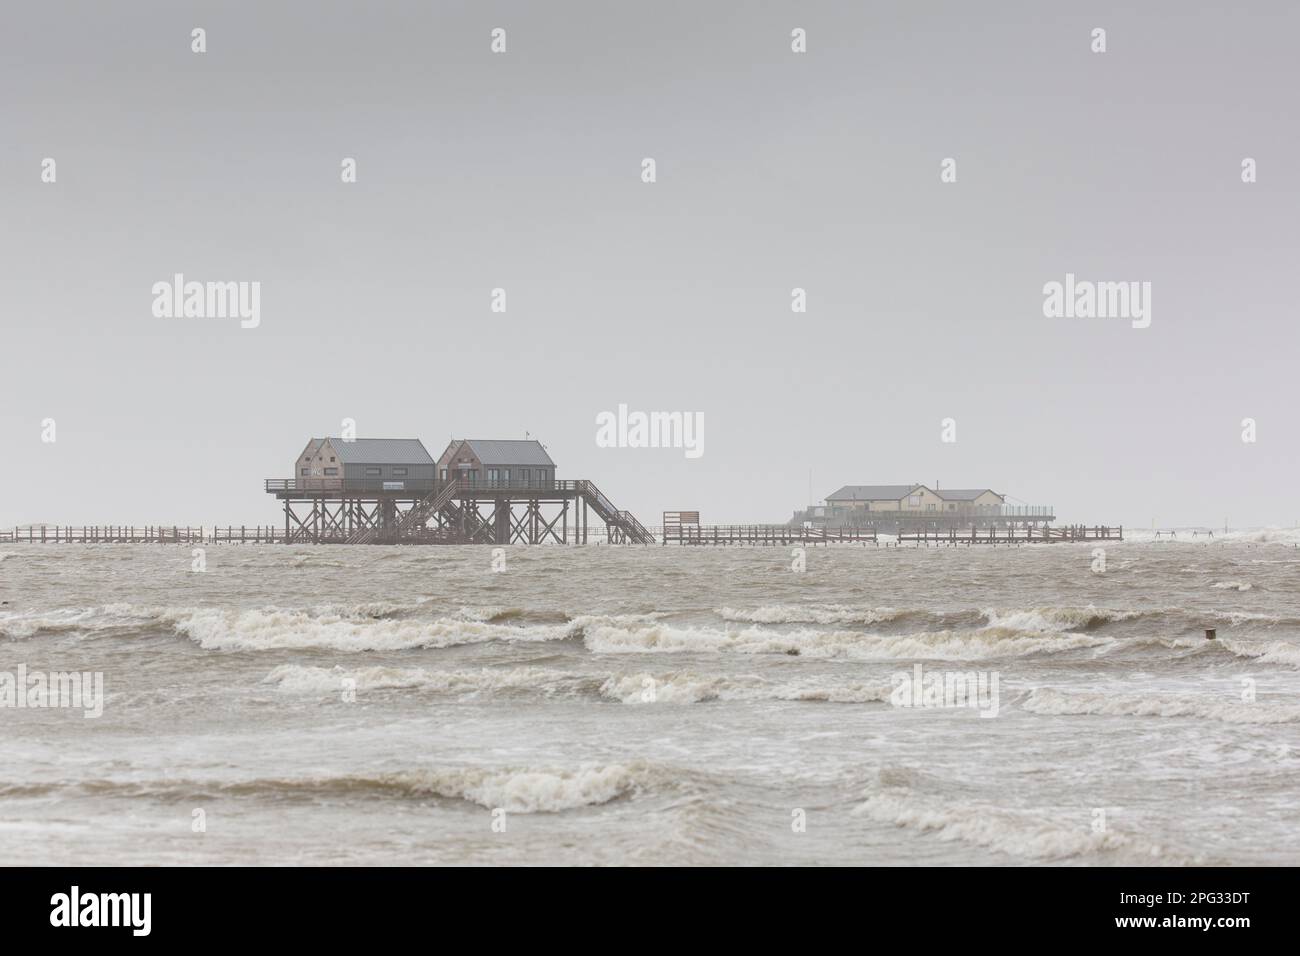 Case a palafitte sulla spiaggia di San Pietro-Ording, una popolare località balneare tedesca, durante un temporale. Schleswig-Holstein, Germania Foto Stock